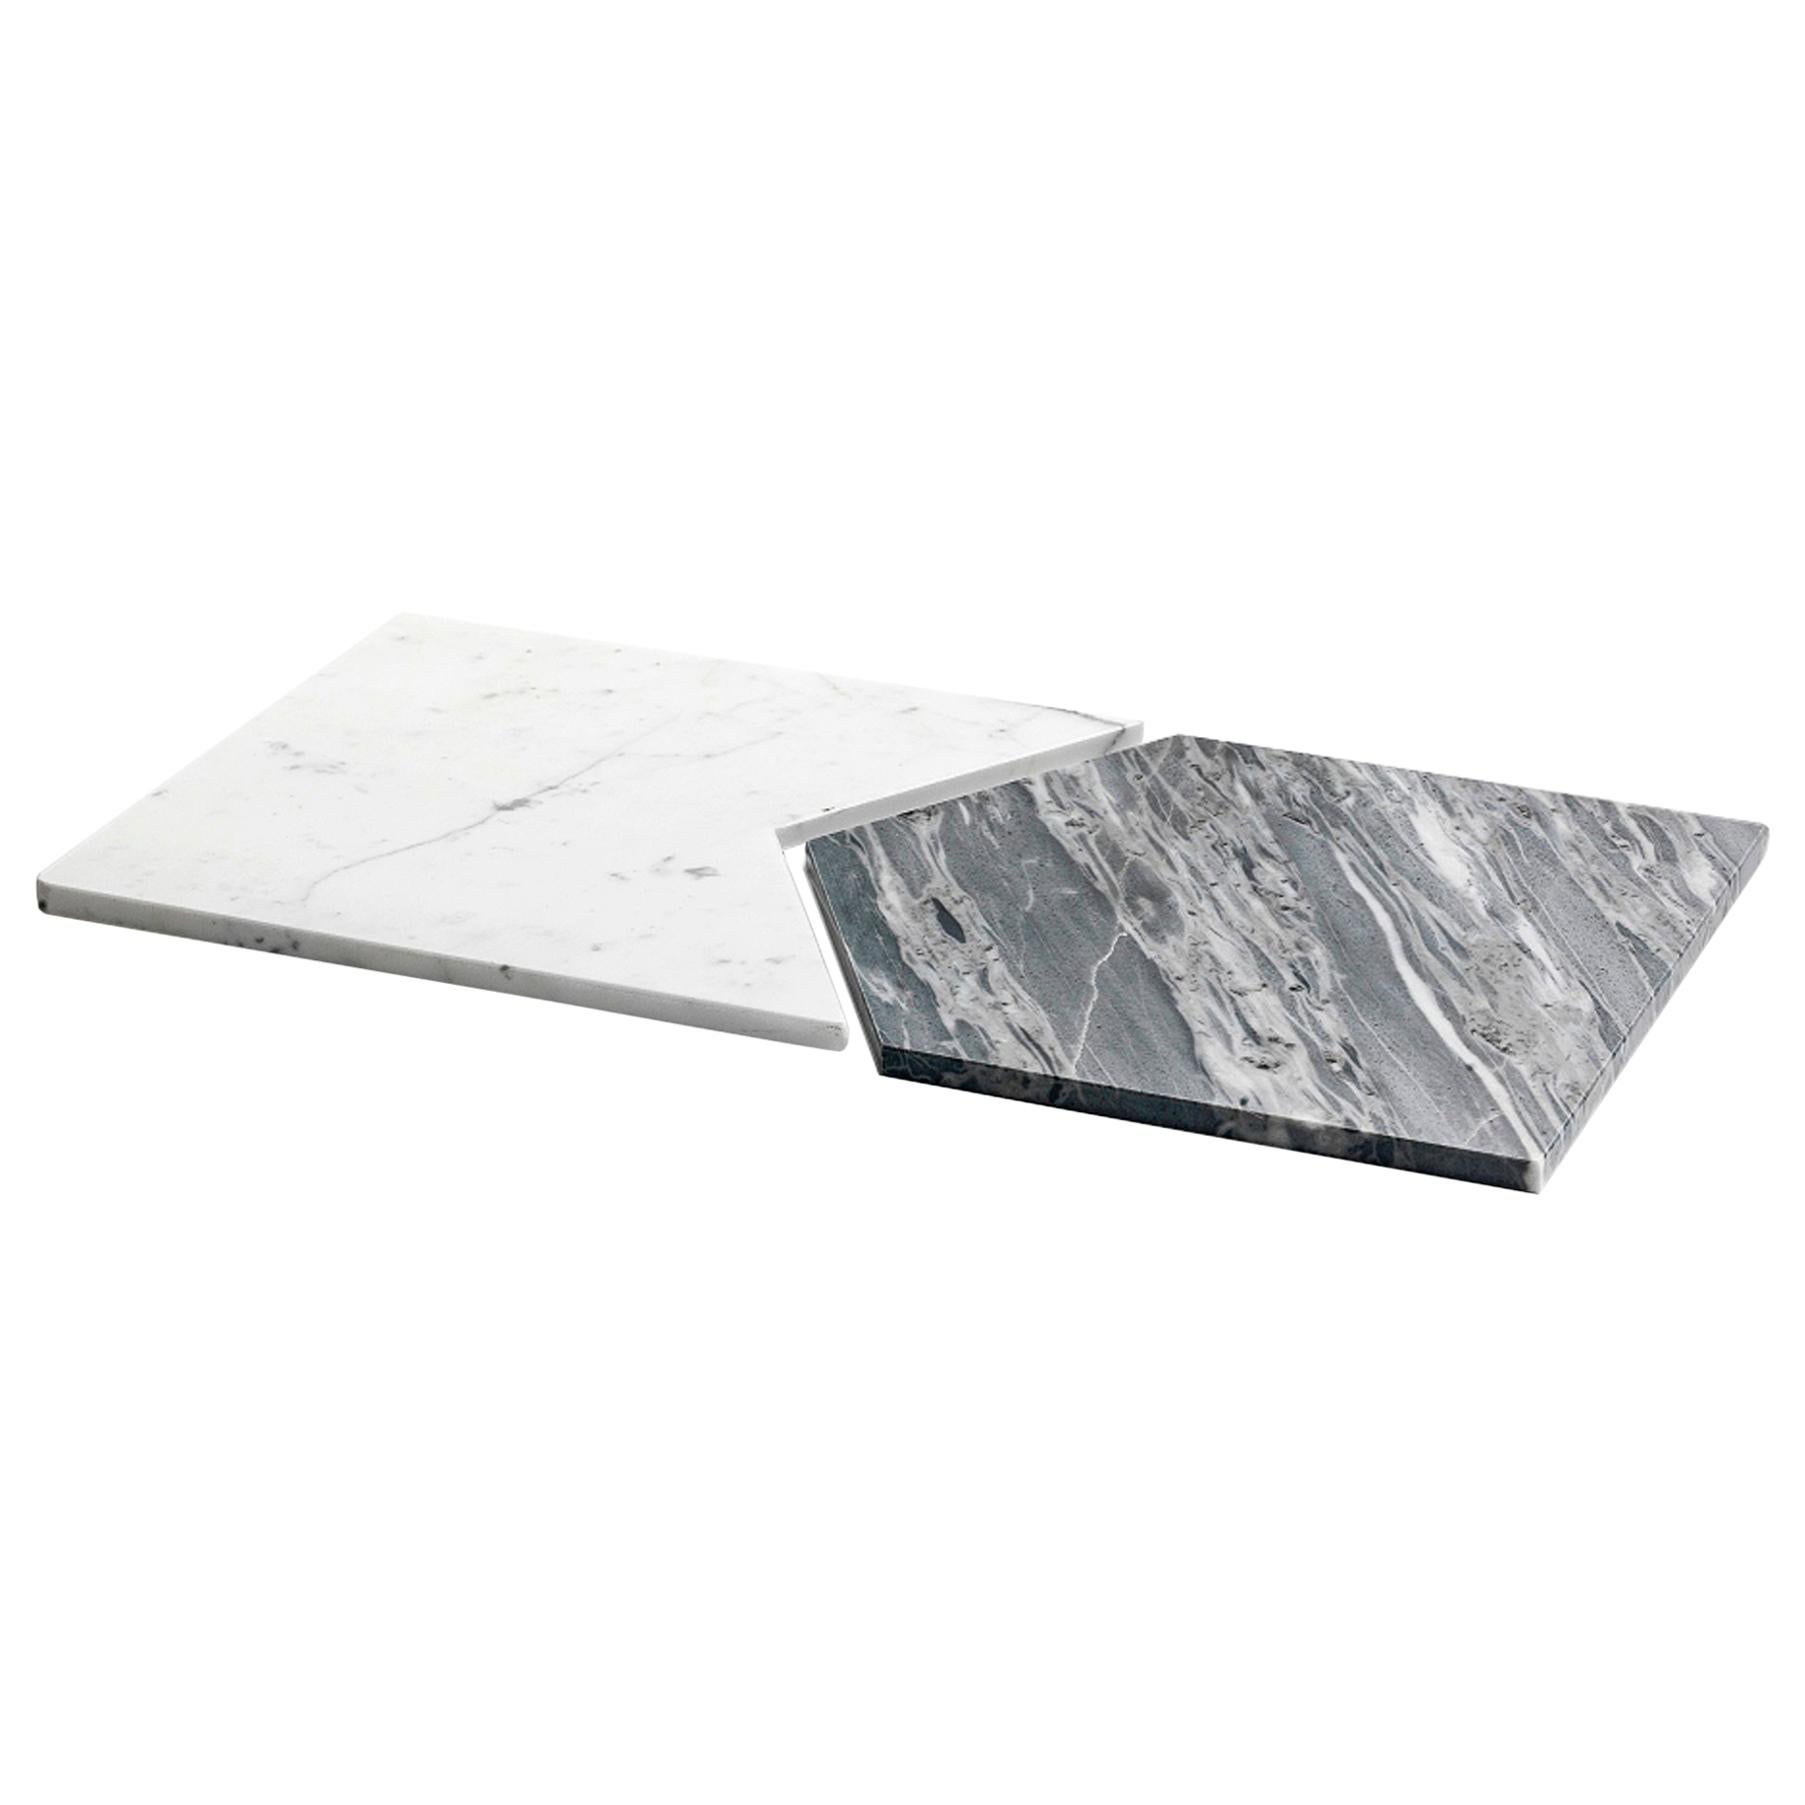 Handgefertigtes Set von 2 Snap-Fit-Tellern aus weißem Carrara- und grauem Bardiglio-Marmor